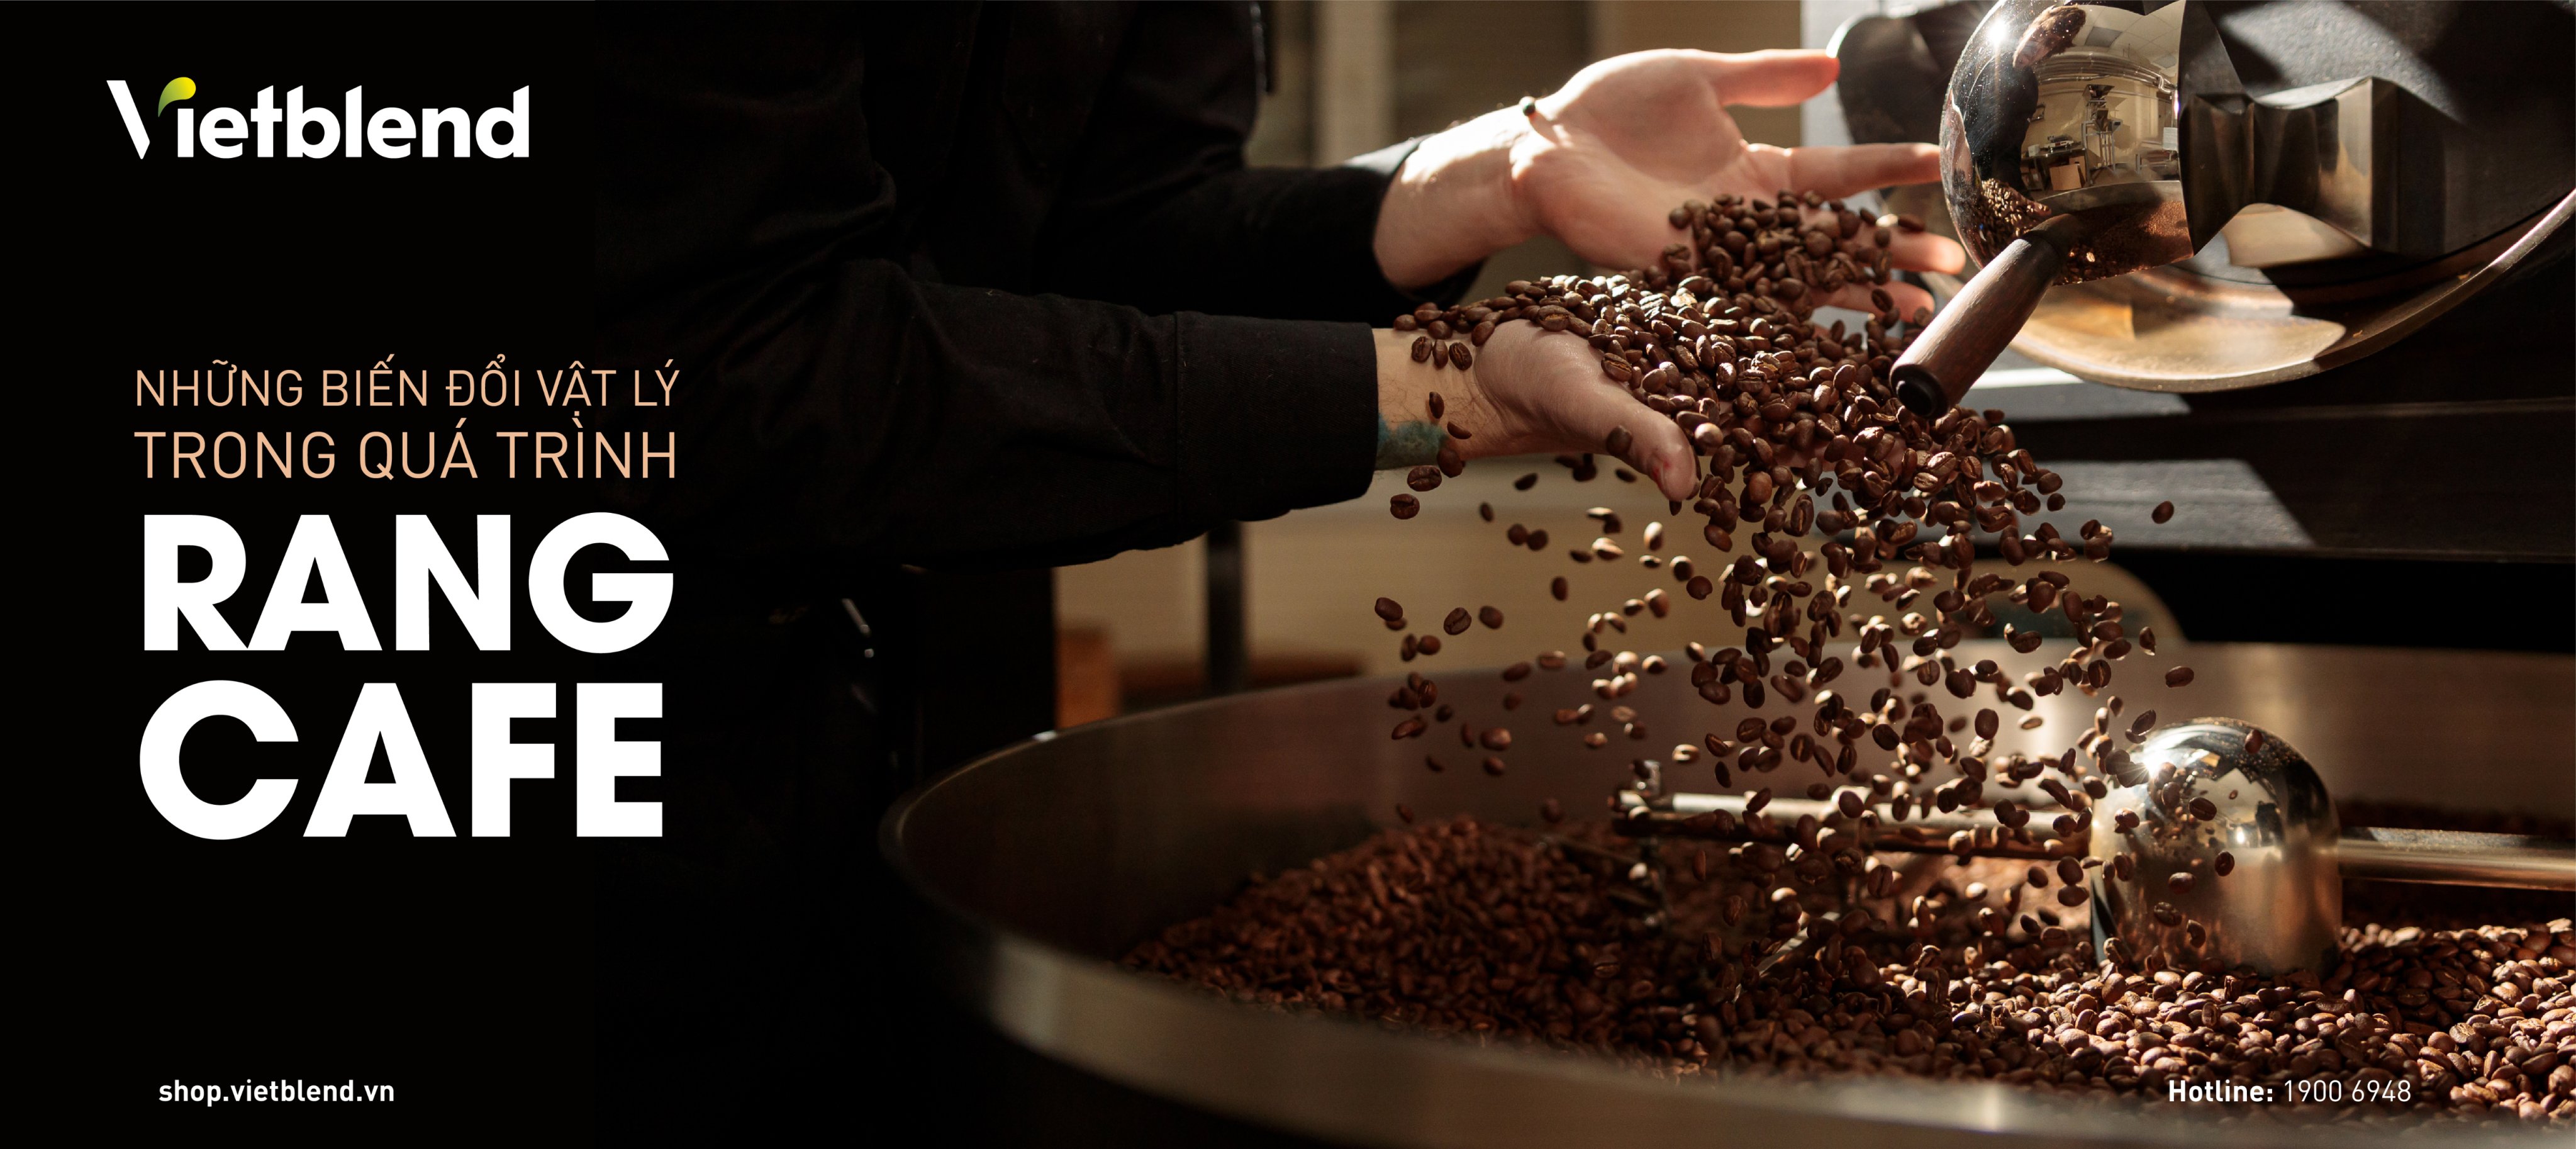 trong quá trình rang, hạt cà phê sẽ trải qua những biến đổi vật lý như thế nào